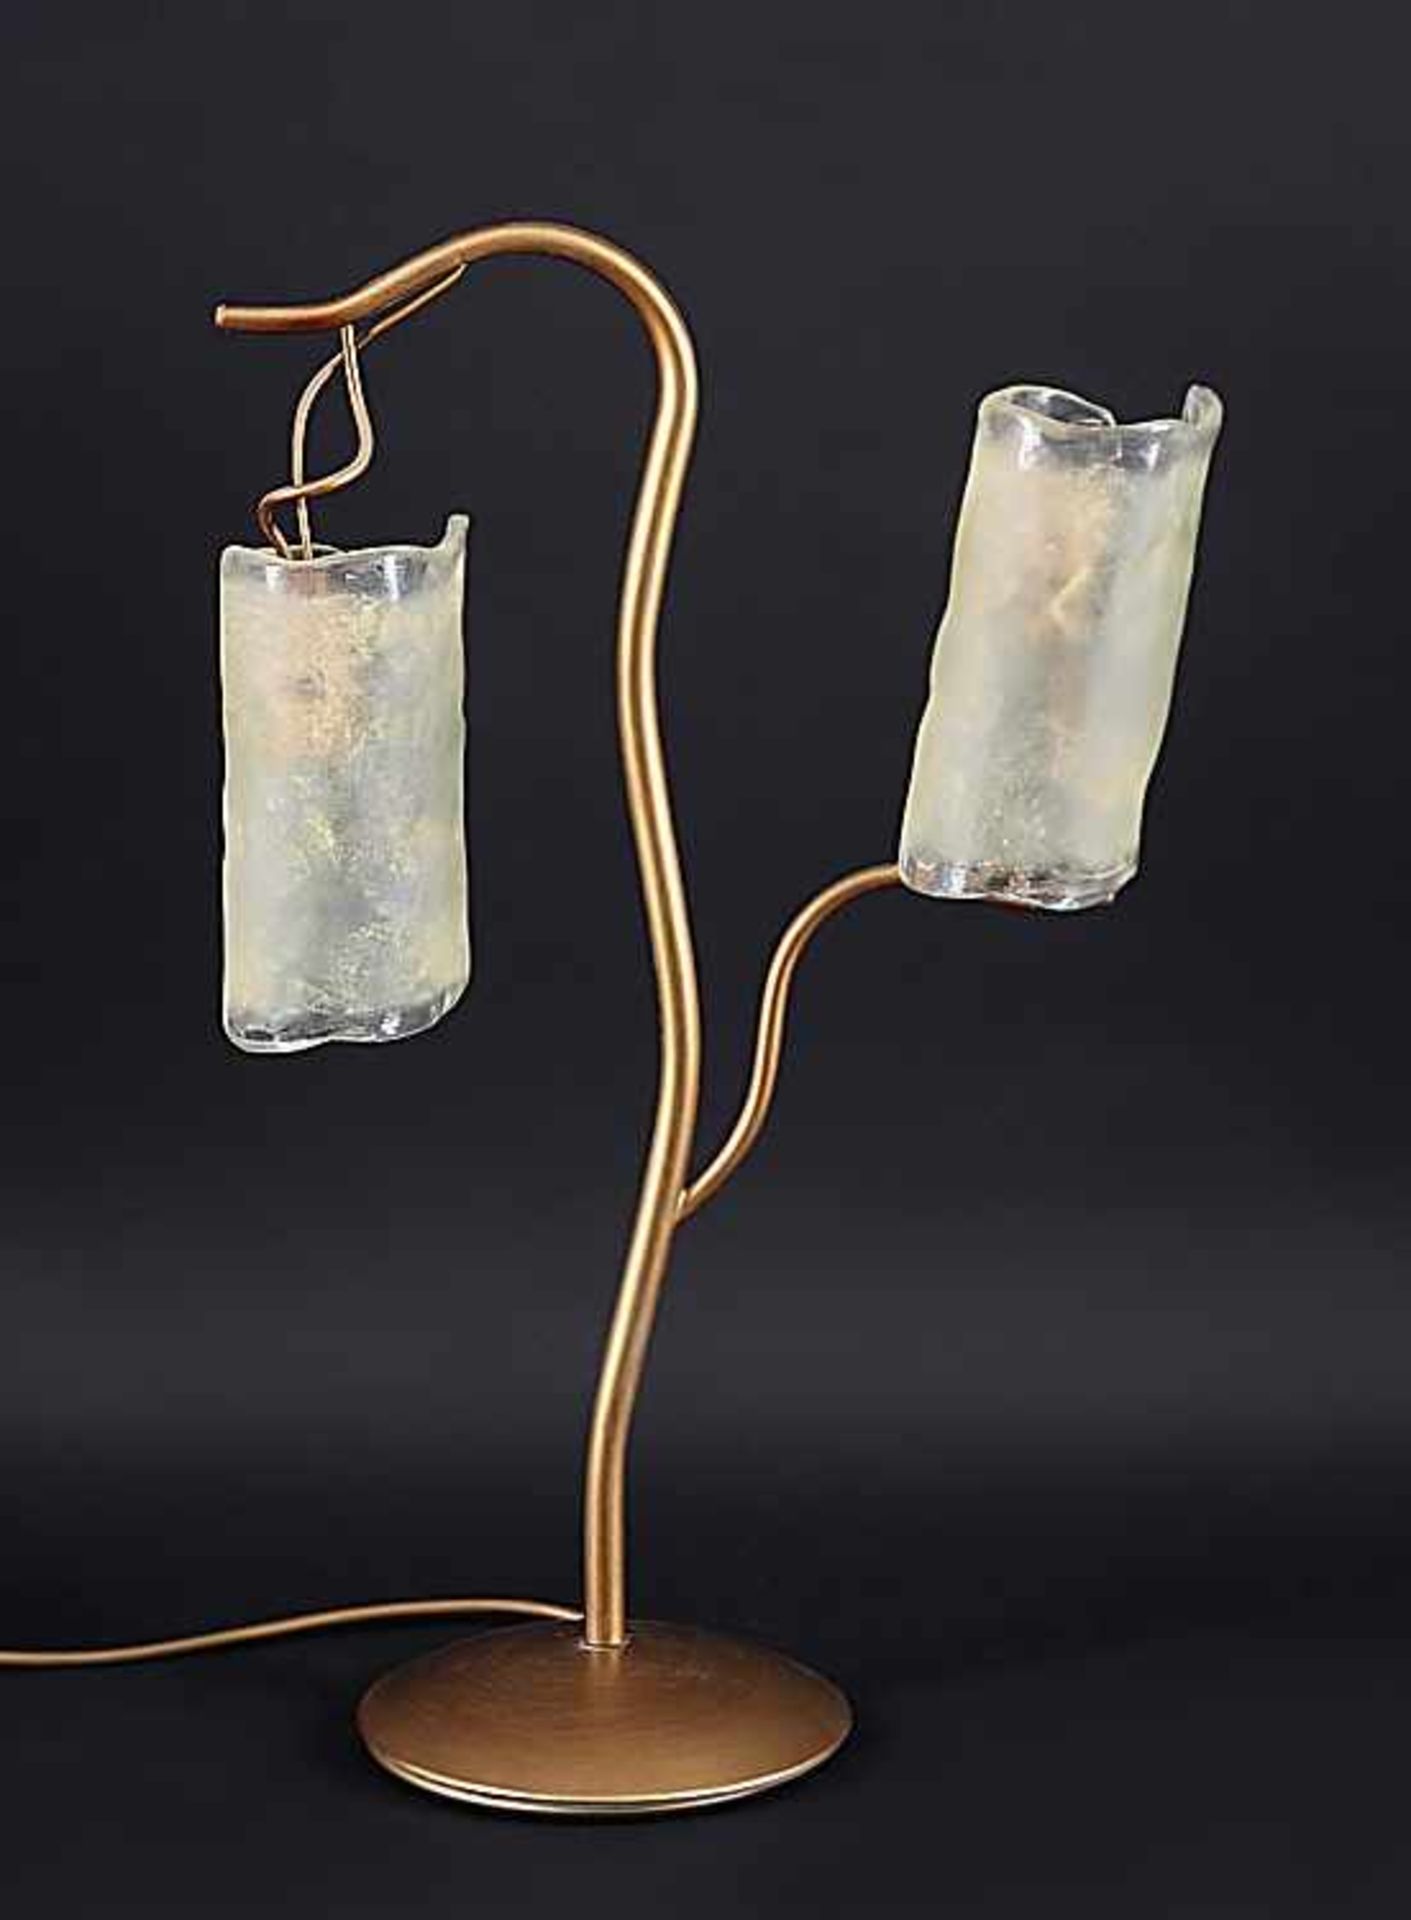 TischlampeModernes Design. Goldfarben patiniertes Metall, zwei Lampenschirme aus von Hand